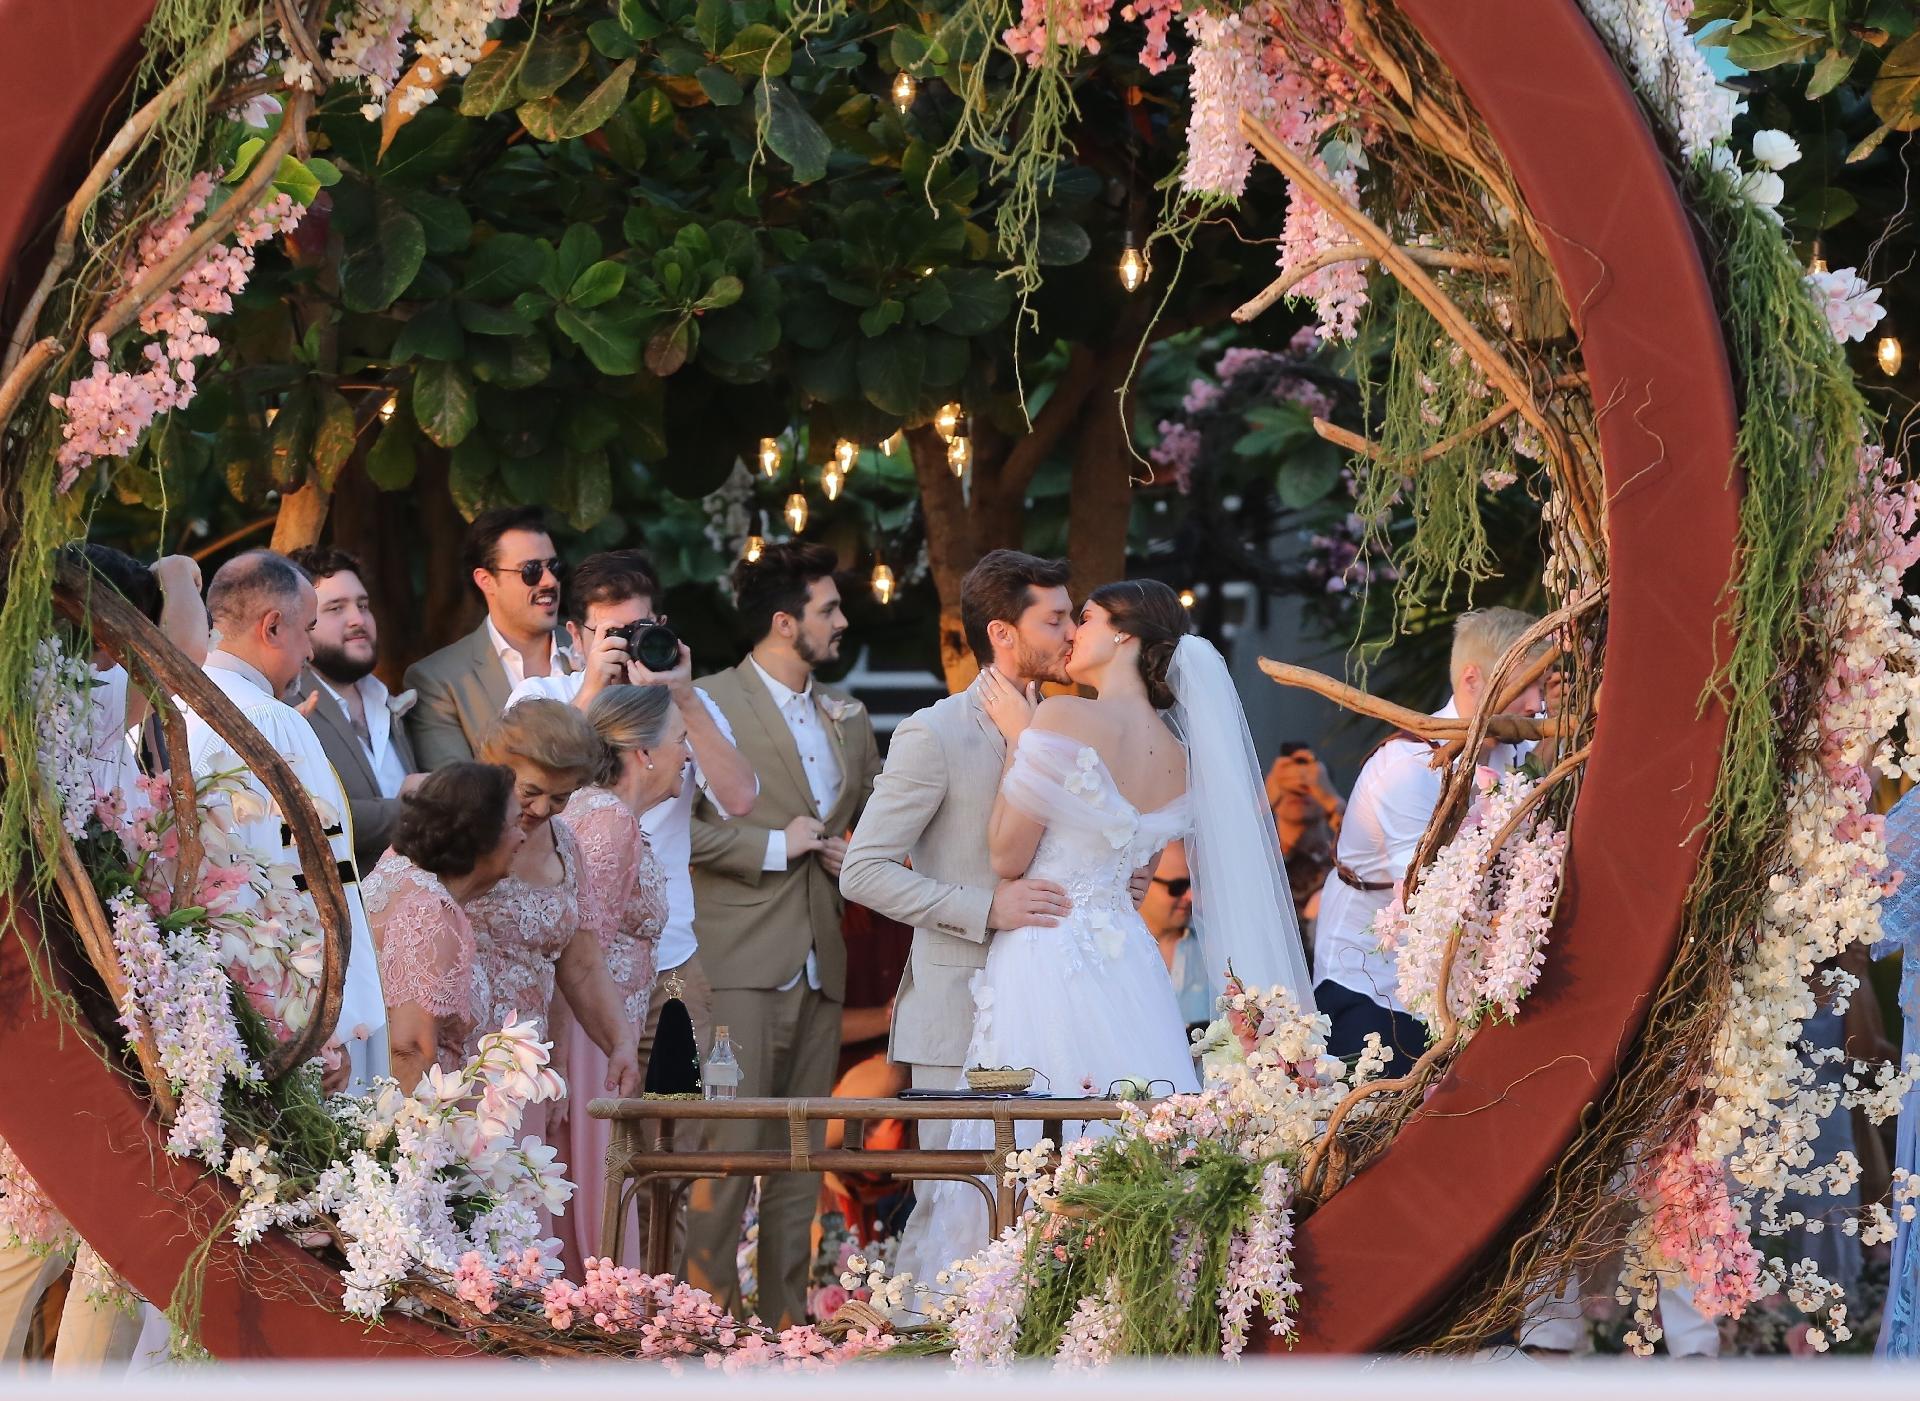 Fotos Casamento De Camila Queiroz E Klebber Toledo Uol Tv E Famosos